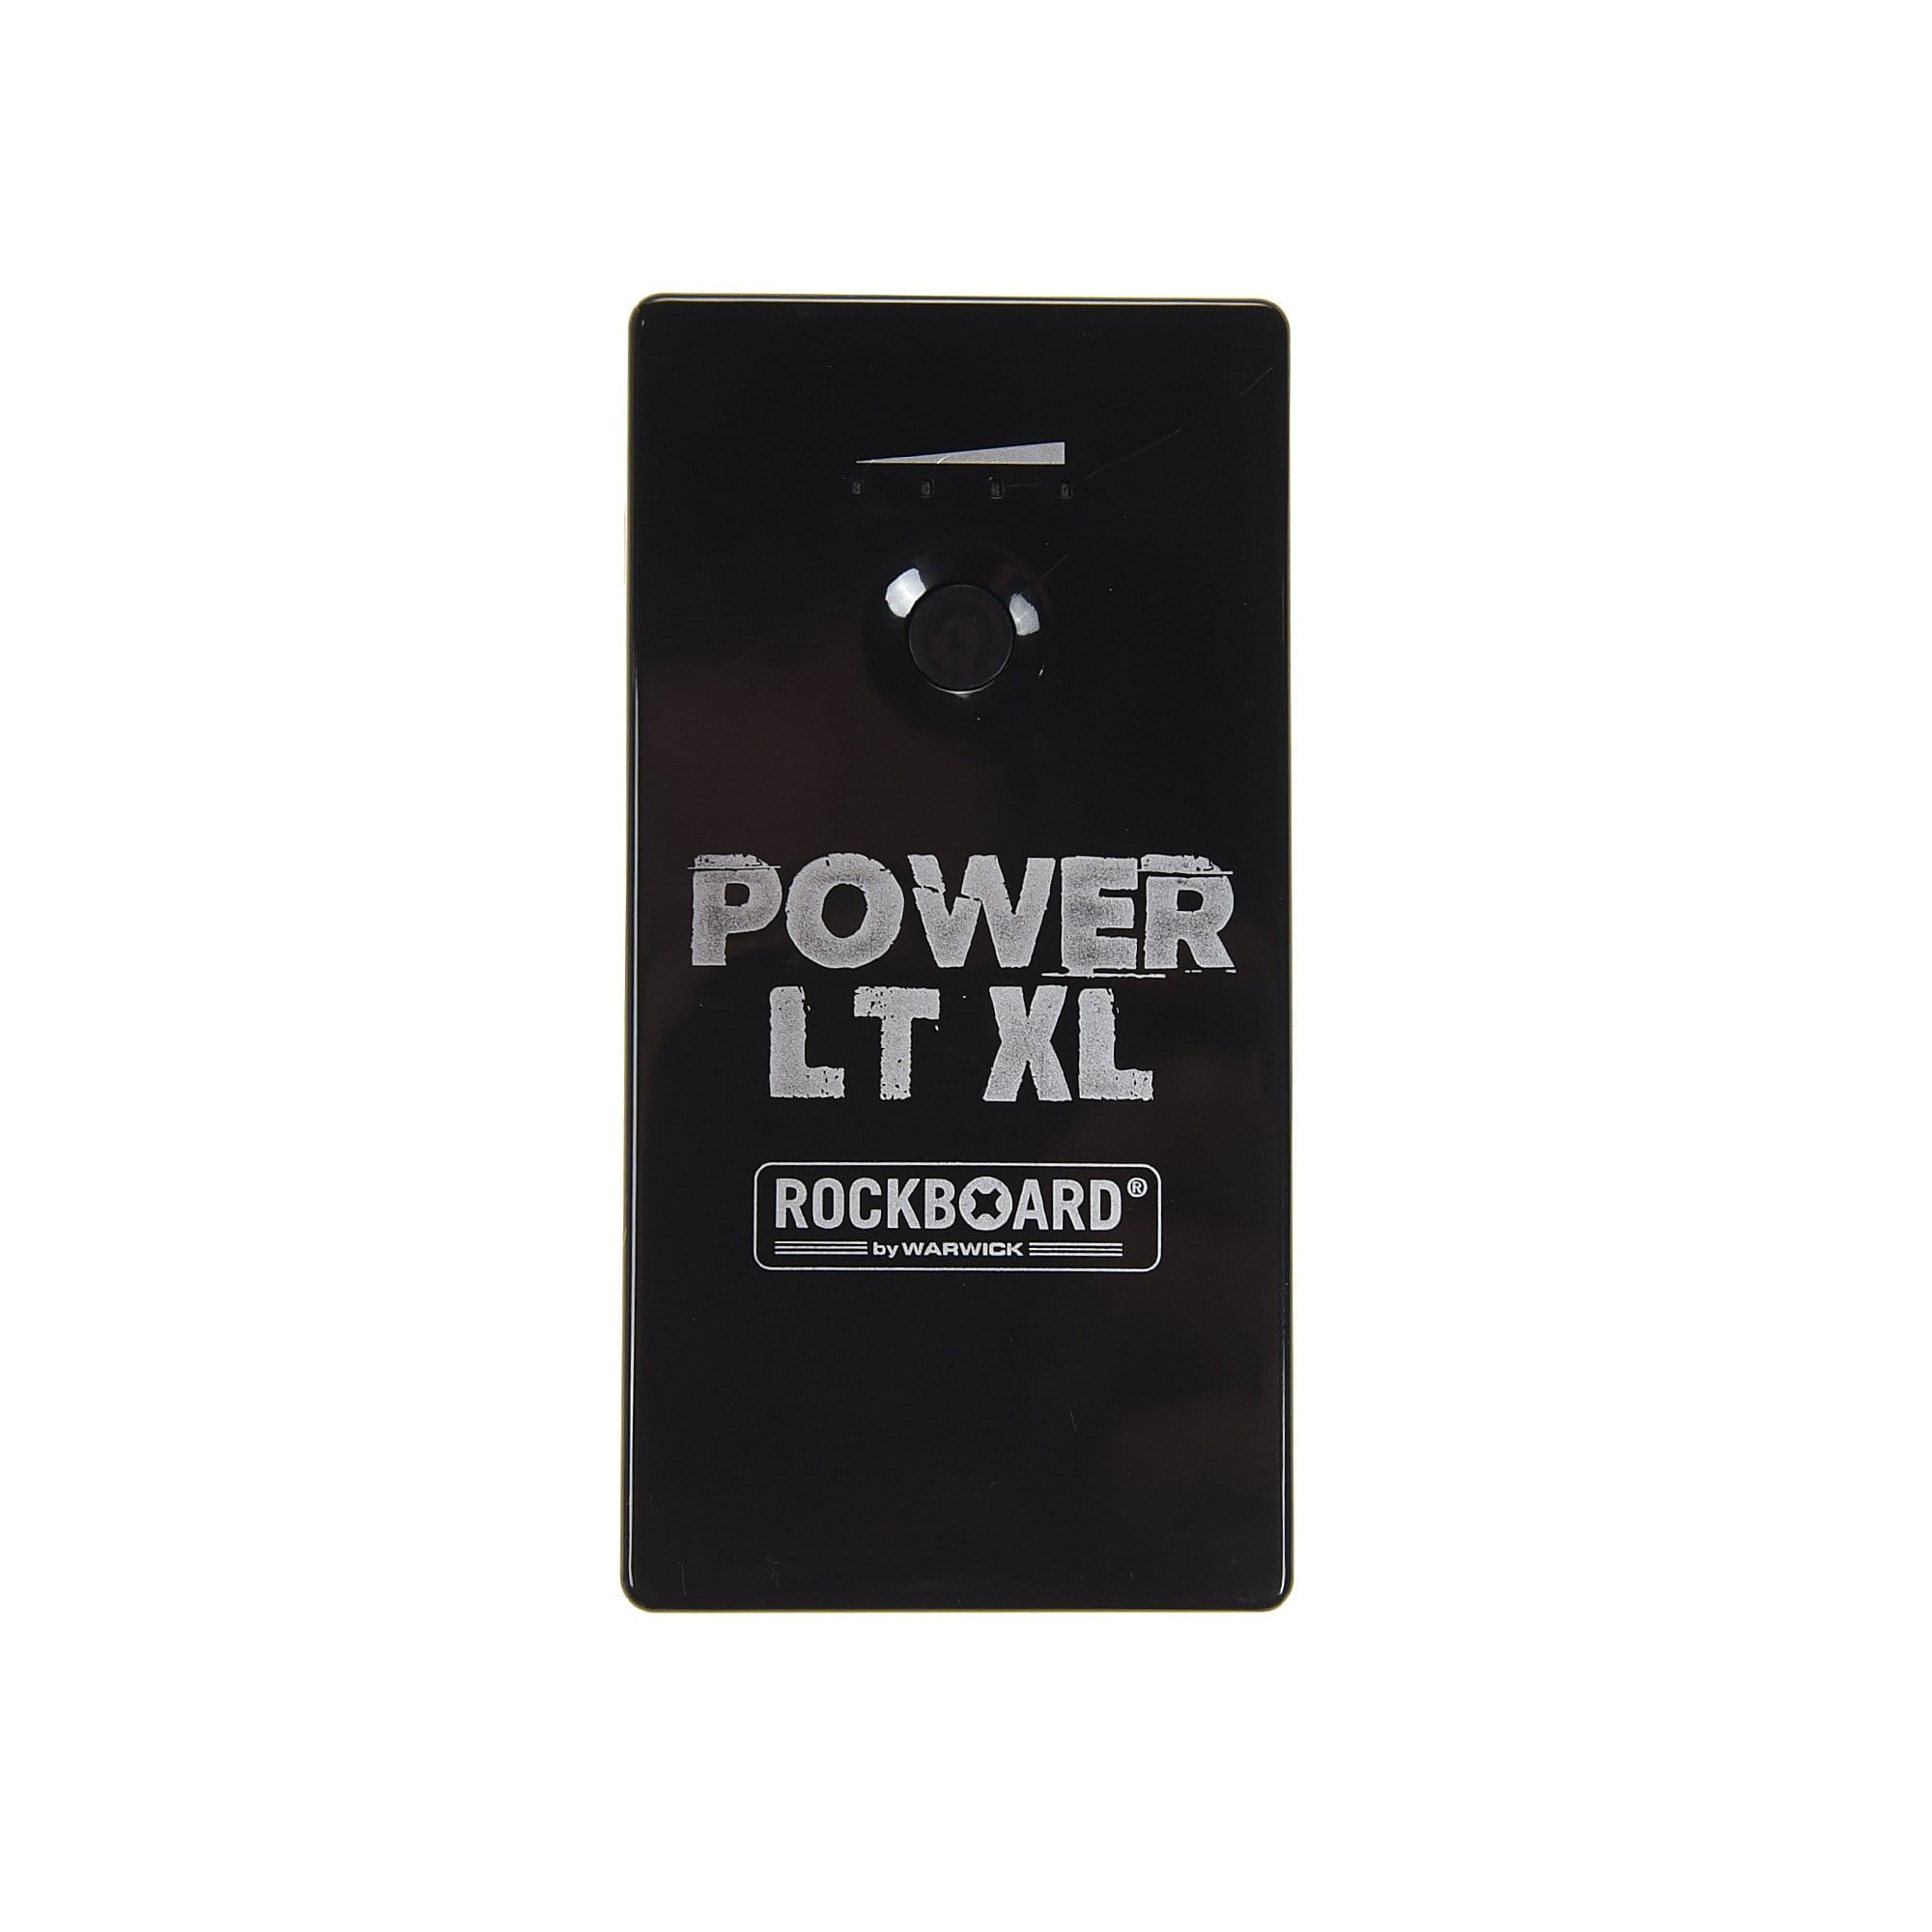 RockGear RockBoard Power LT XL Lithium-Ion Rechargeable Battery